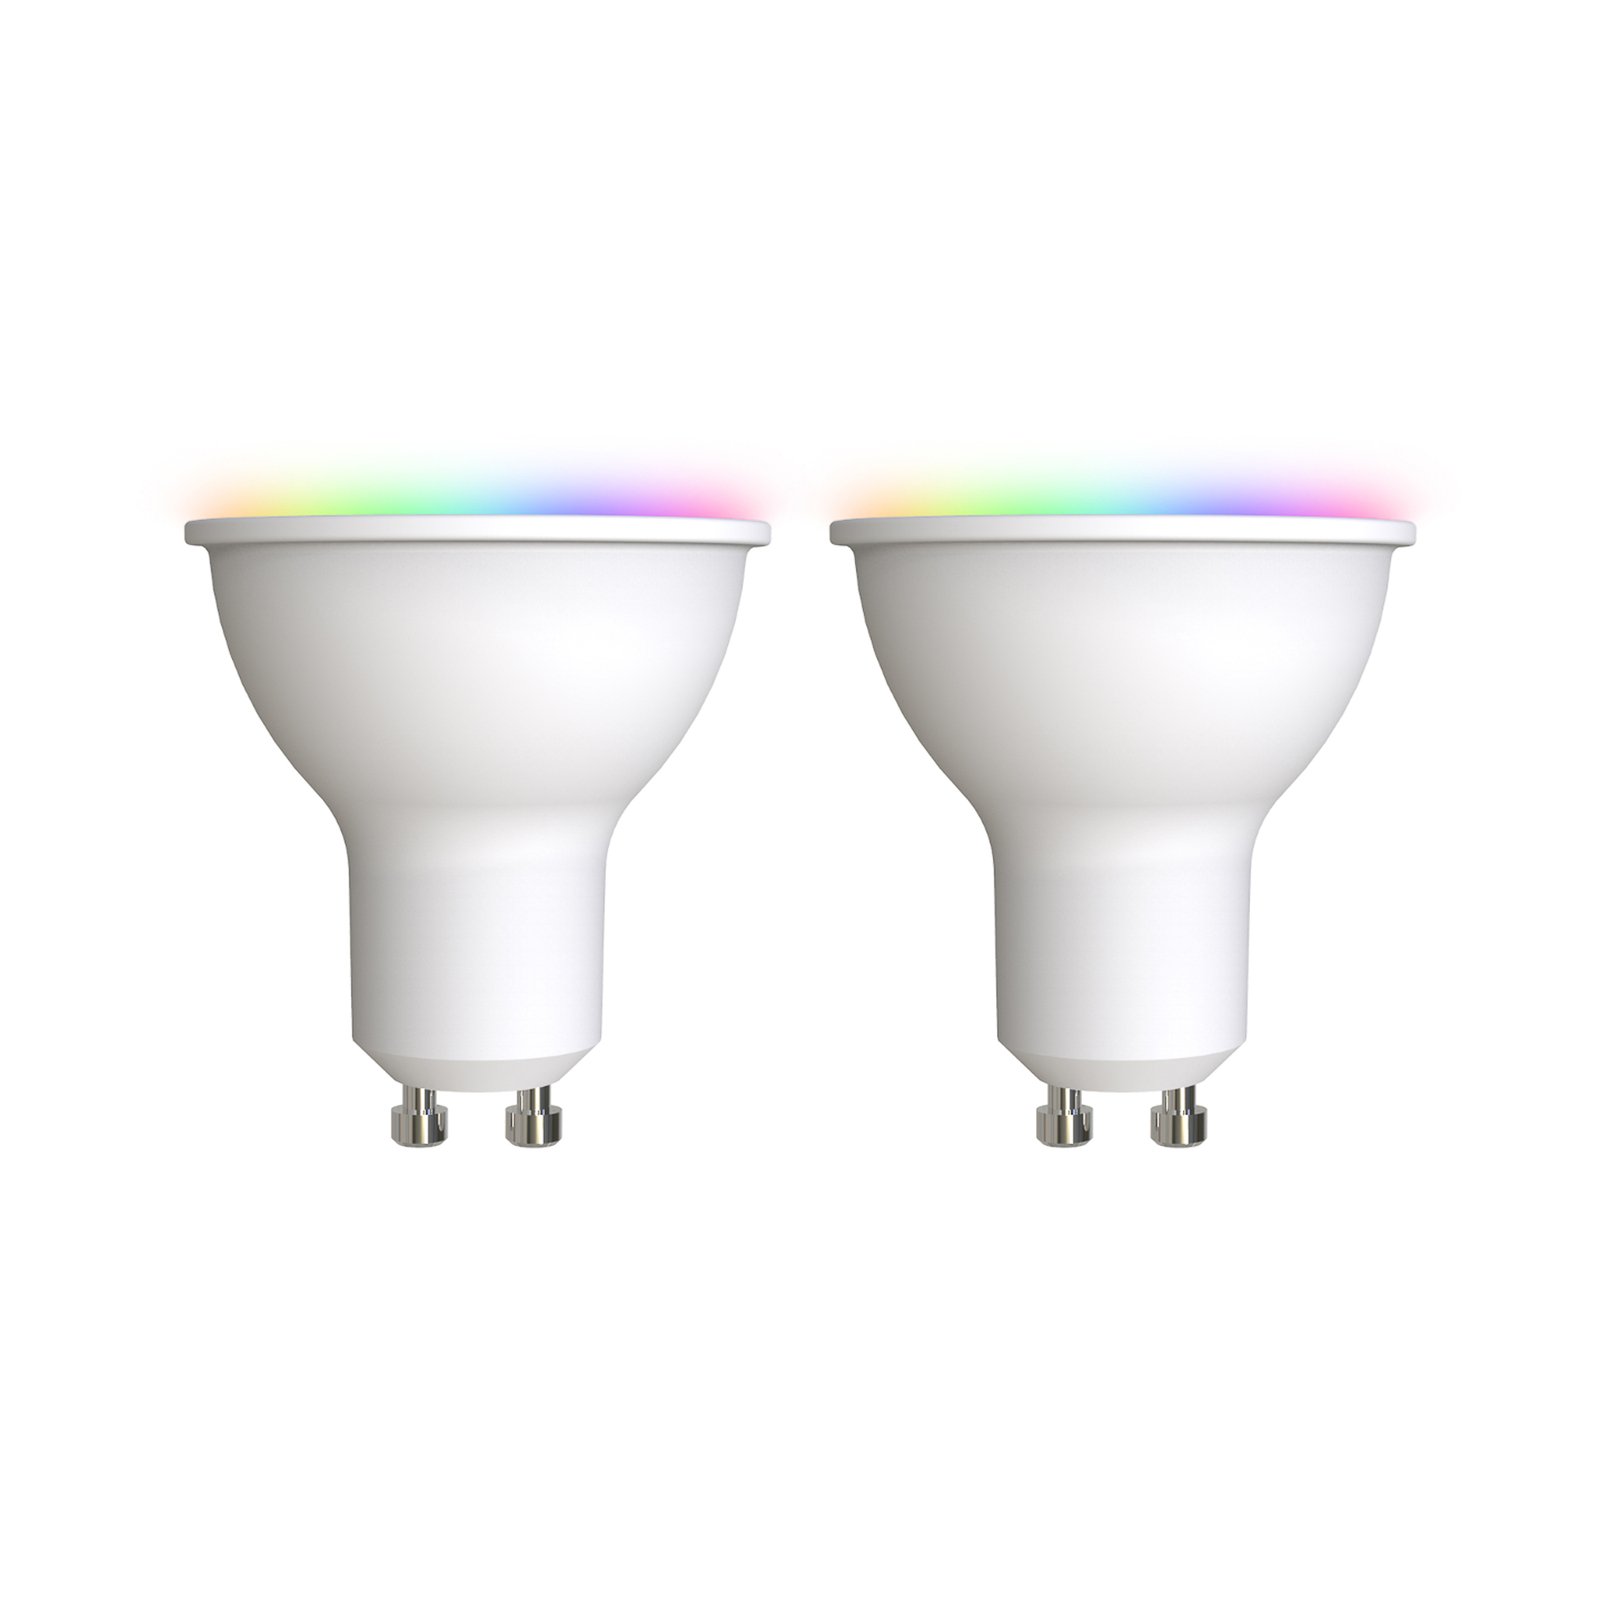 Prios LED-GU10 muovi 4,7W RGBW WLAN opaali, 2 kpl